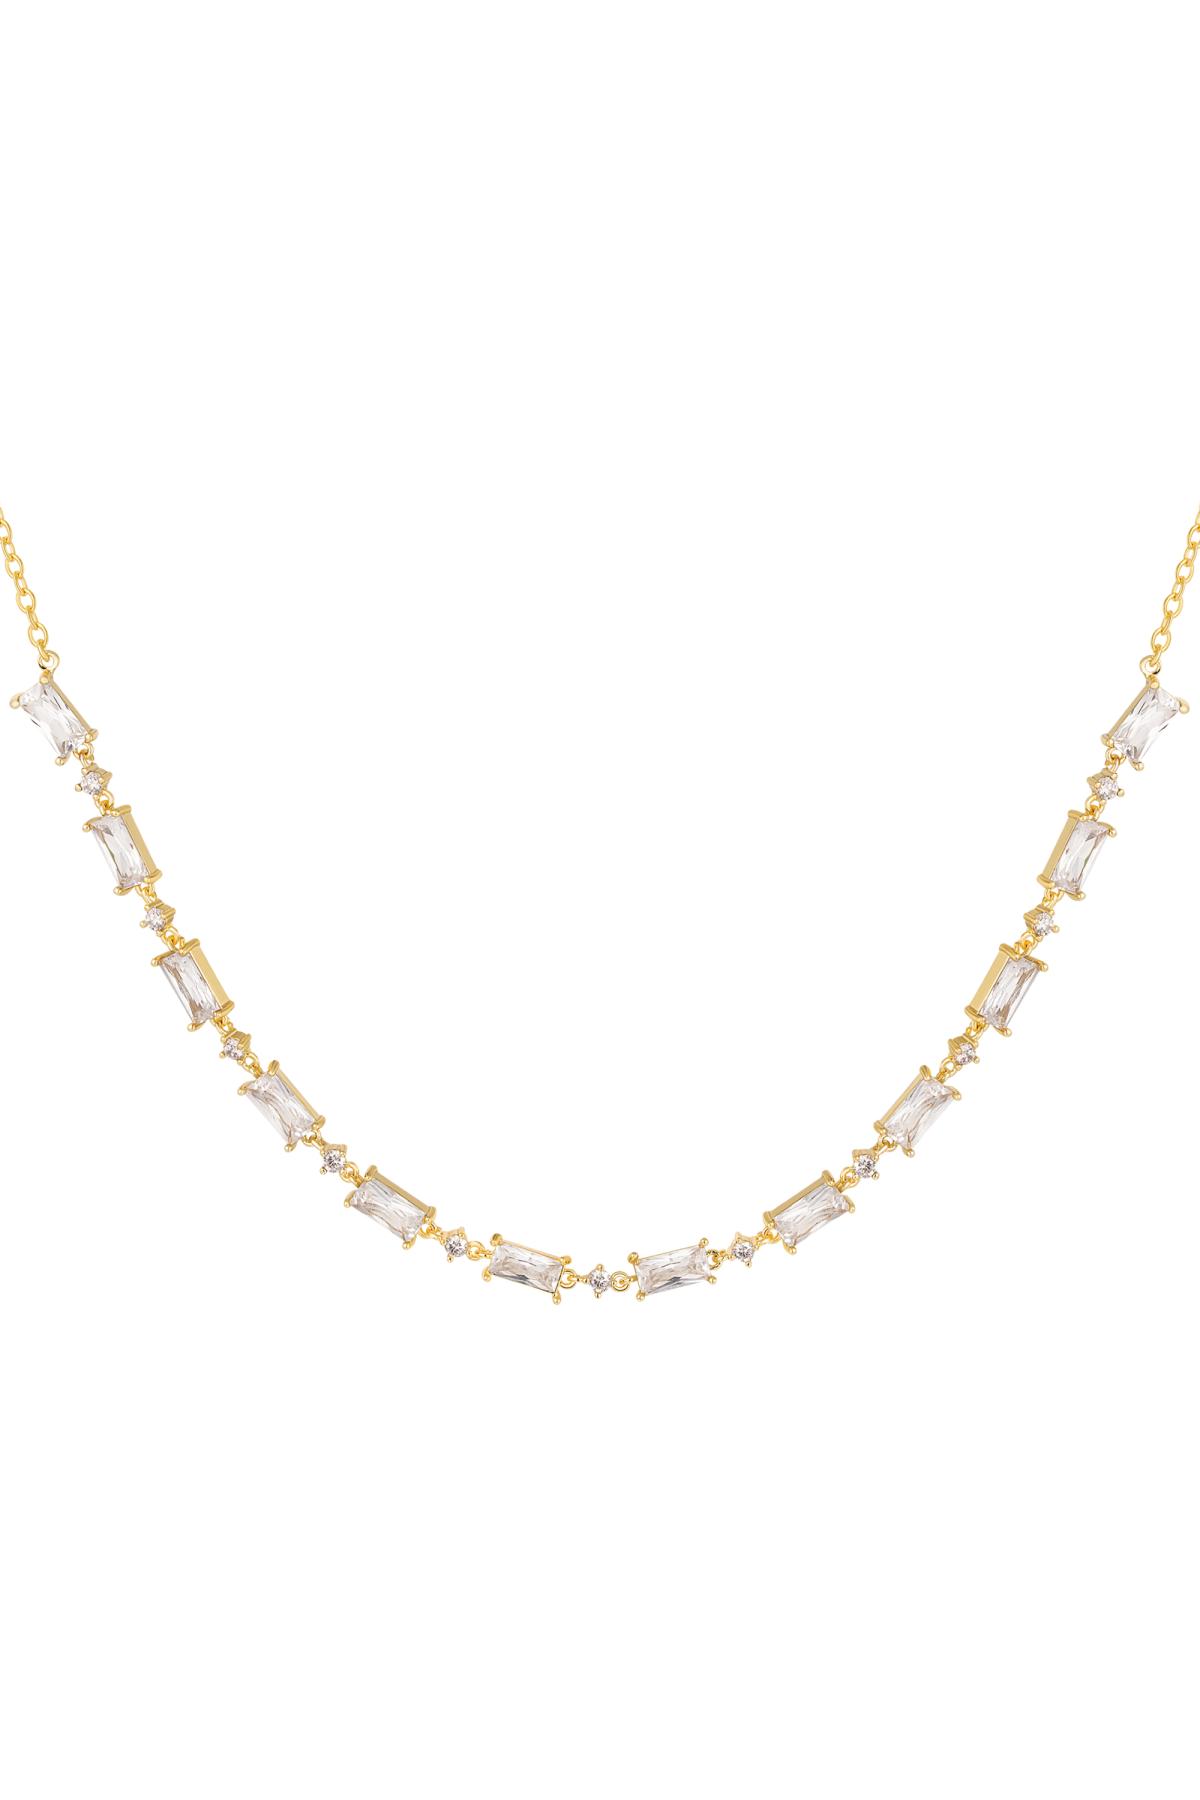 Halskette mit farbigen Steinen - Kollektion Sparkle Gold Kupfer